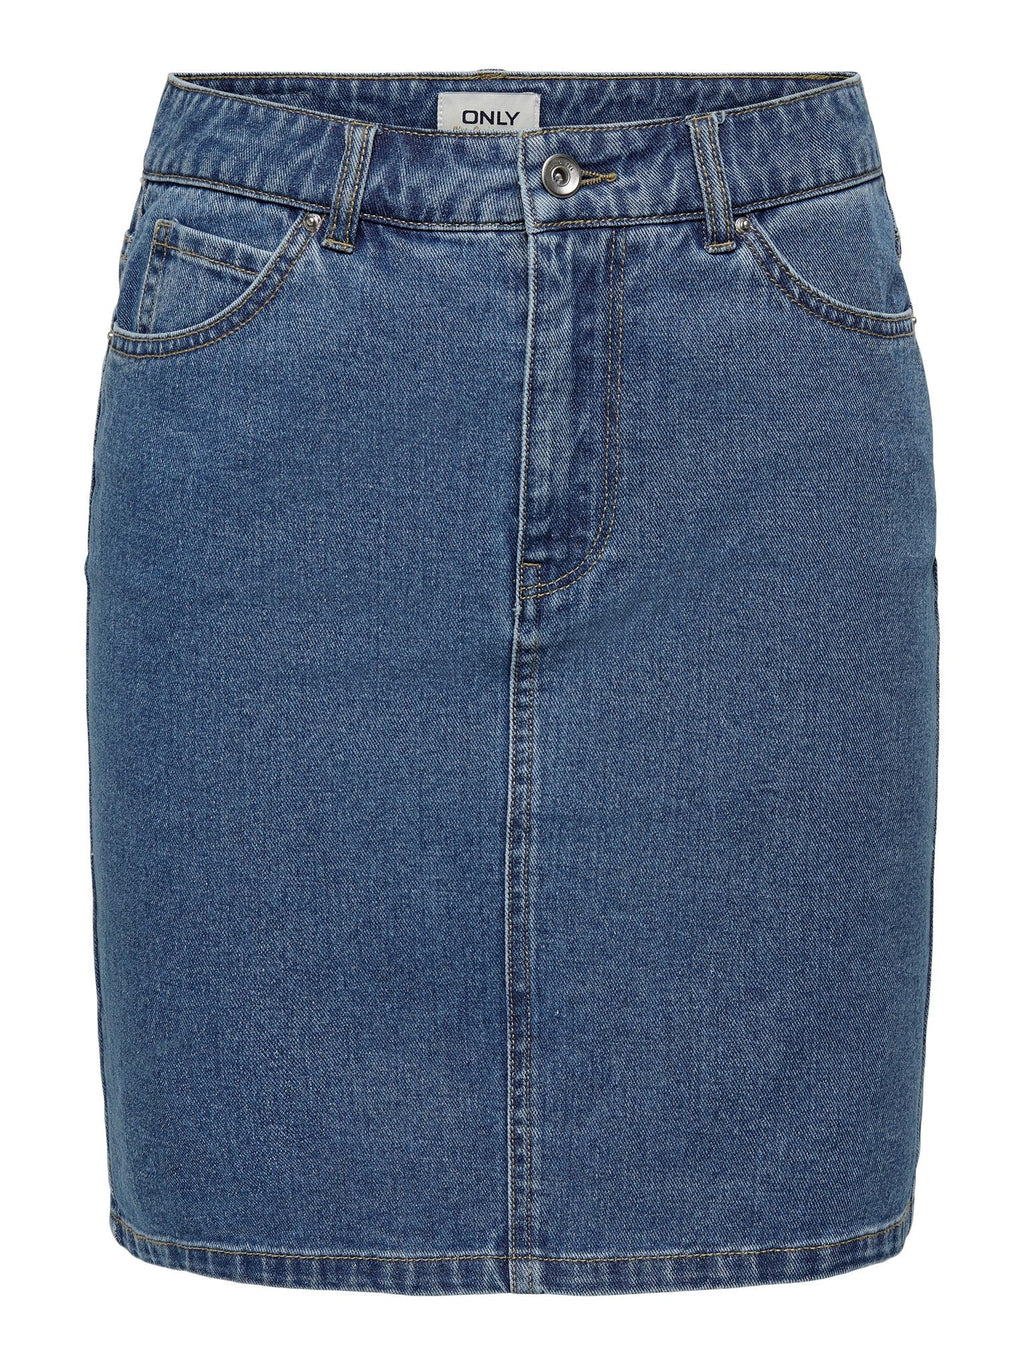 Vega High Waist Skirt - Medium Blue Denim